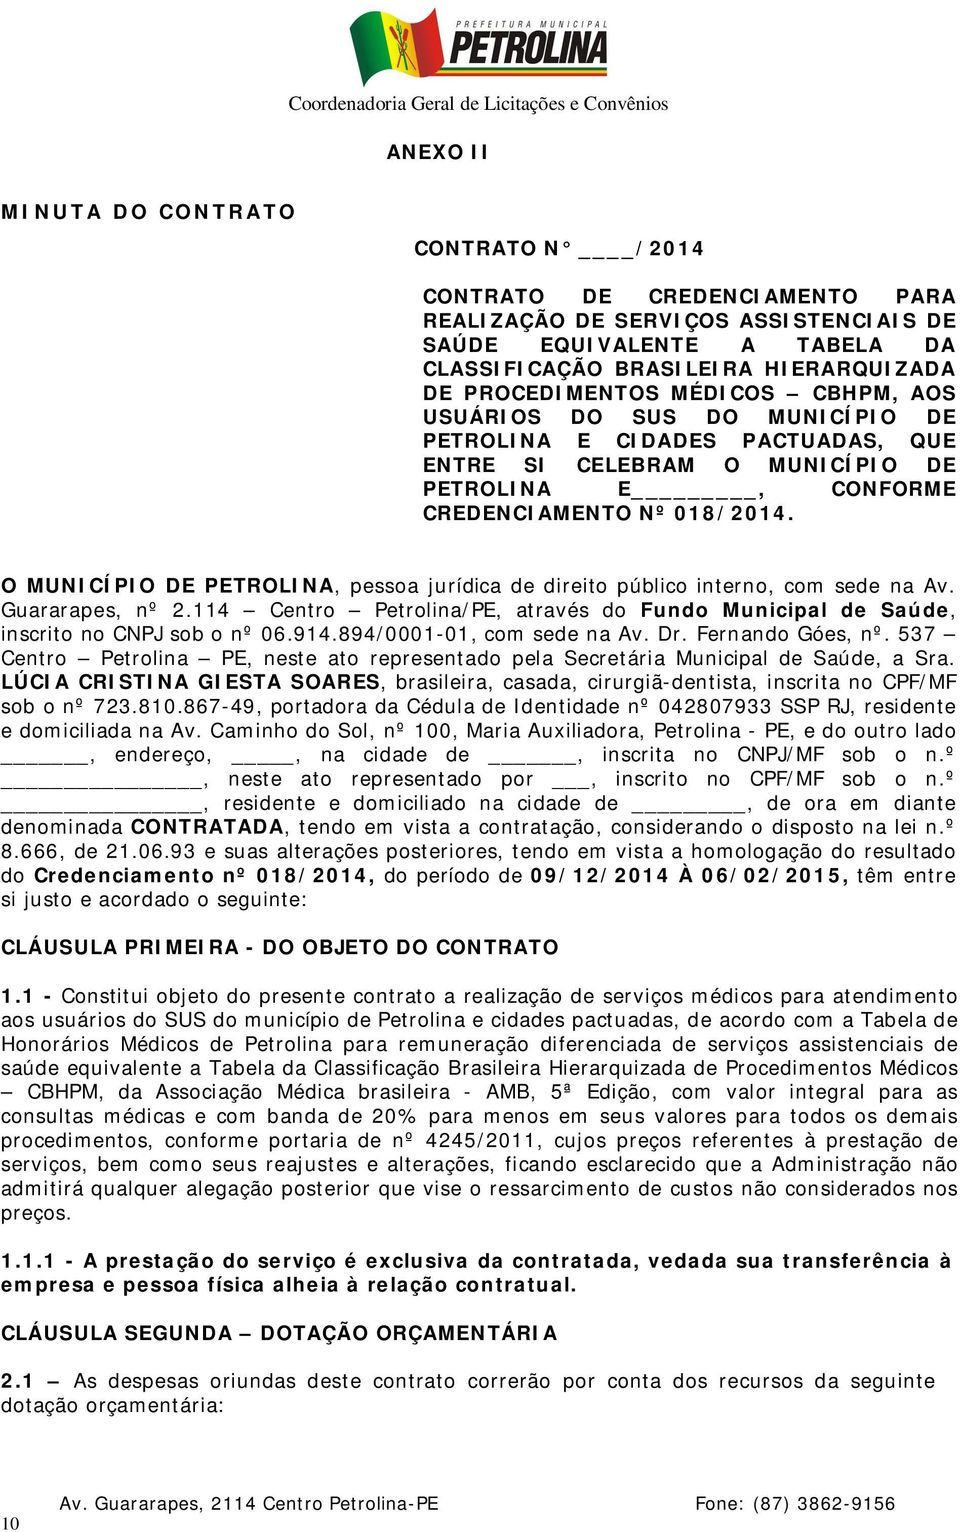 O MUNICÍPIO DE PETROLINA, pessoa jurídica de direito público interno, com sede na Av. Guararapes, nº 2.114 Centro Petrolina/PE, através do Fundo Municipal de Saúde, inscrito no CNPJ sob o nº 06.914.